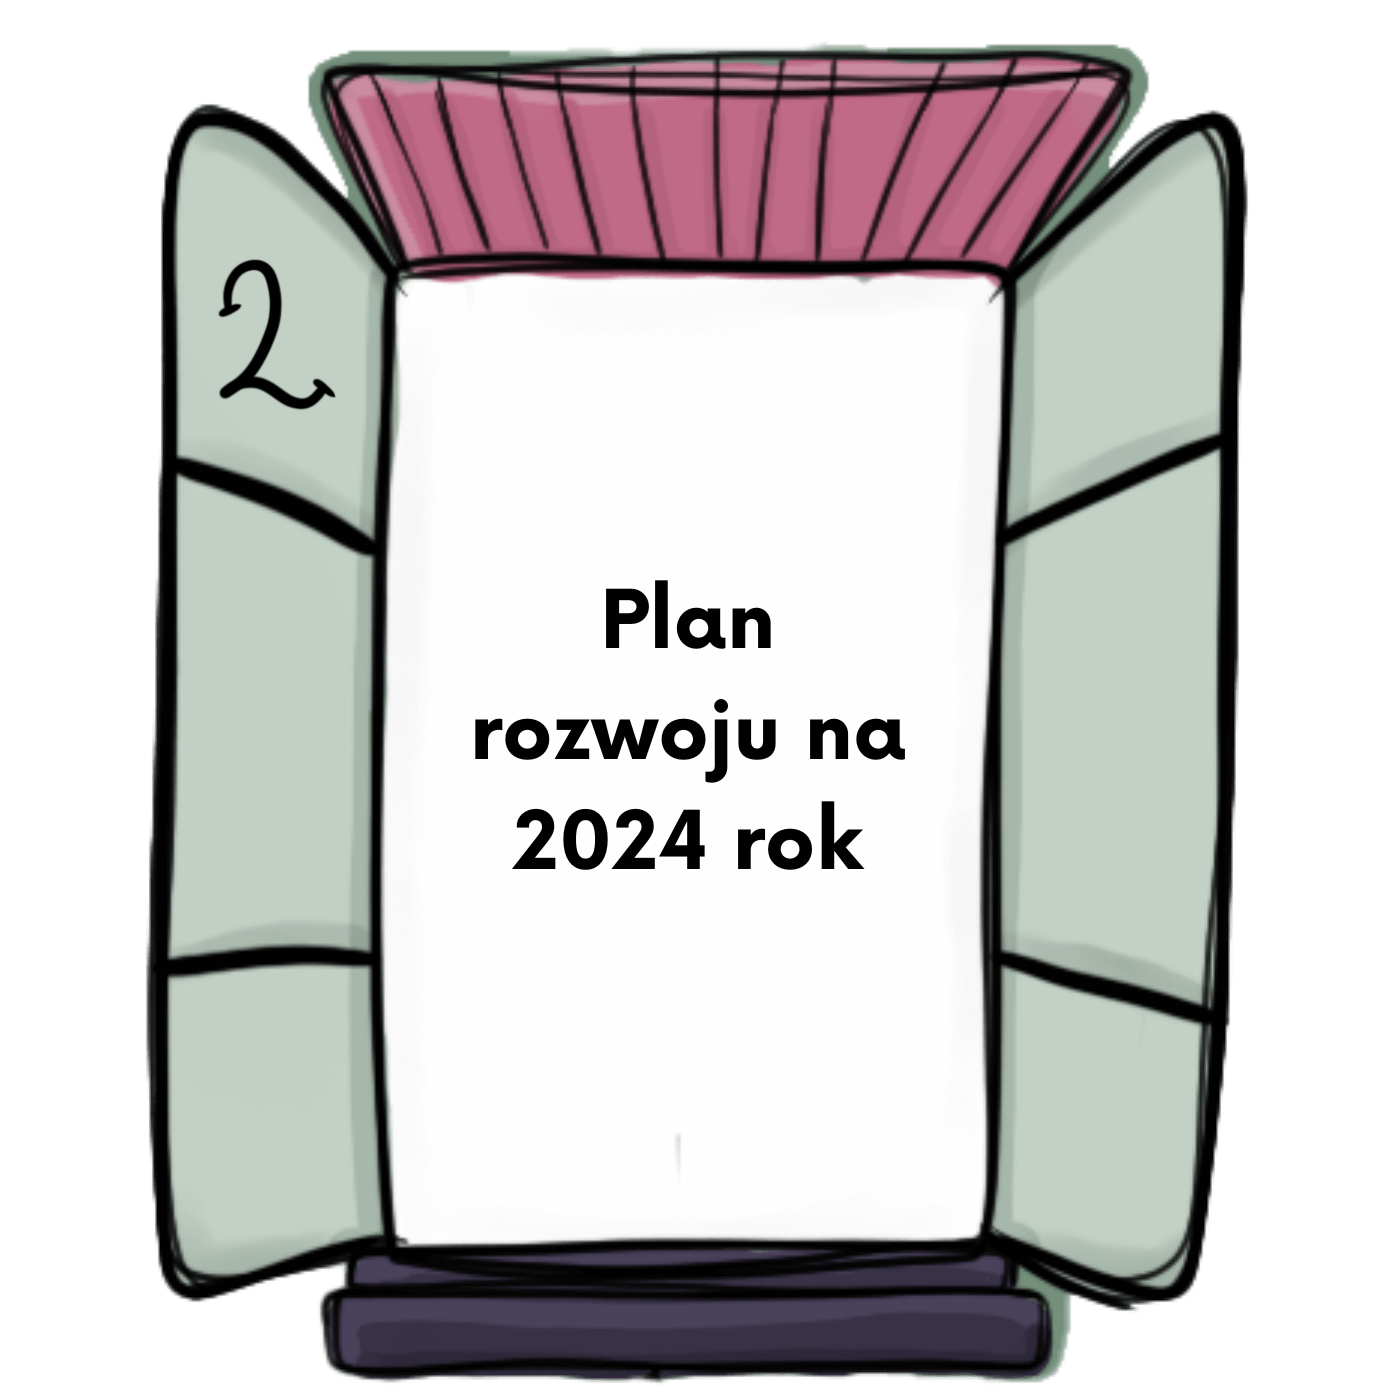 2 okienko w Kalendarzu Adwentowym Wirtualnej Asystentki 2023 od worqAssist Agnieszki Pojda